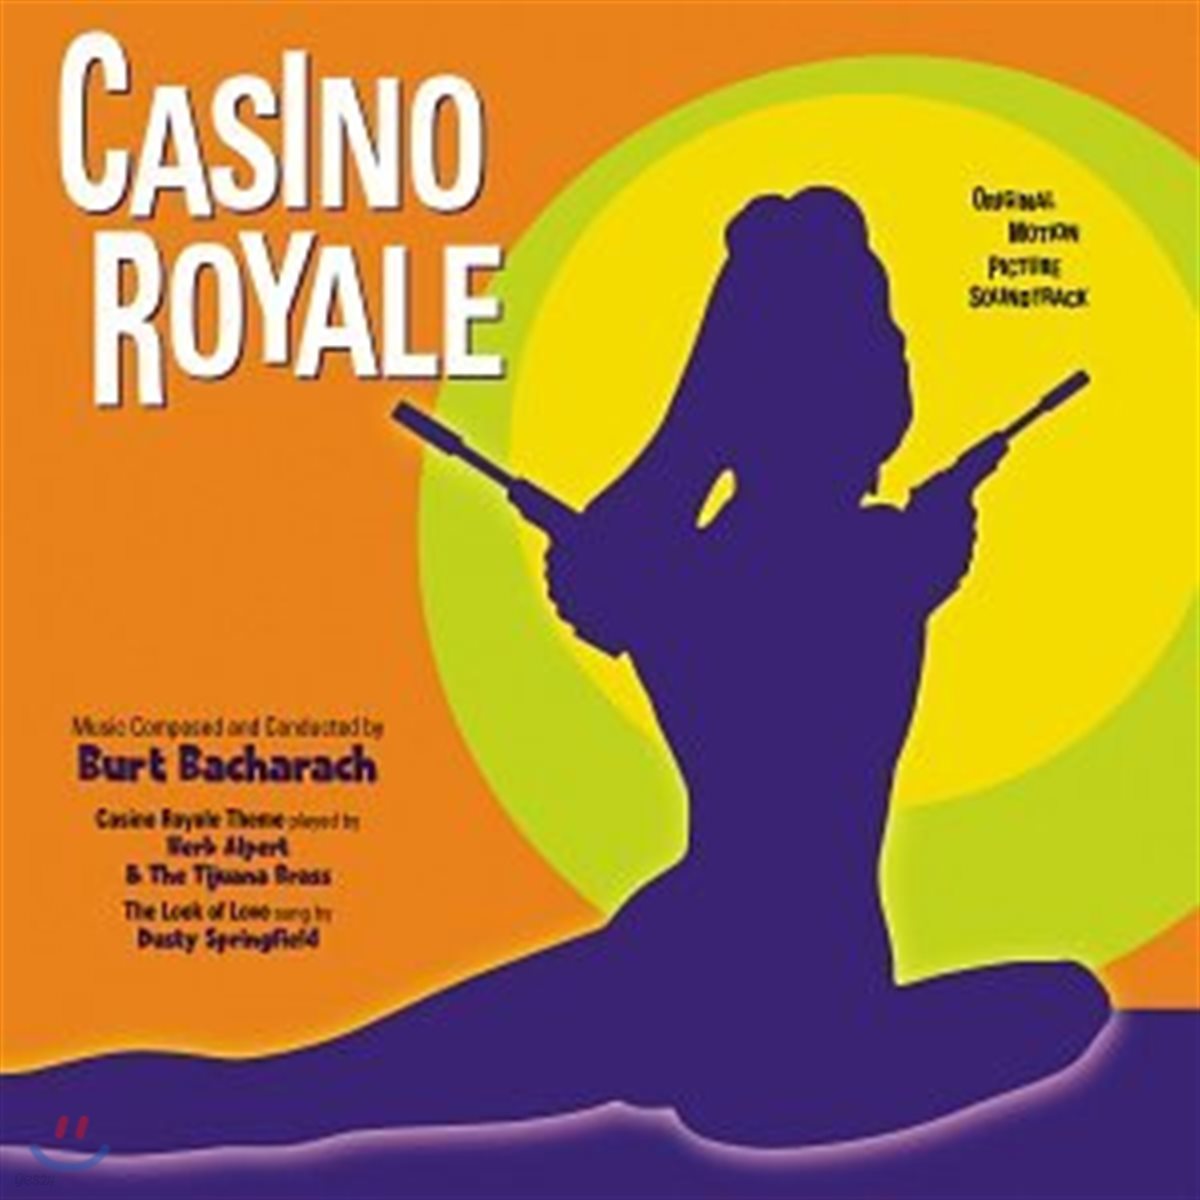 007 카지노 로얄 영화음악 (Casino Royale 1967 OST by Burt Bacharach 버트 바카락)